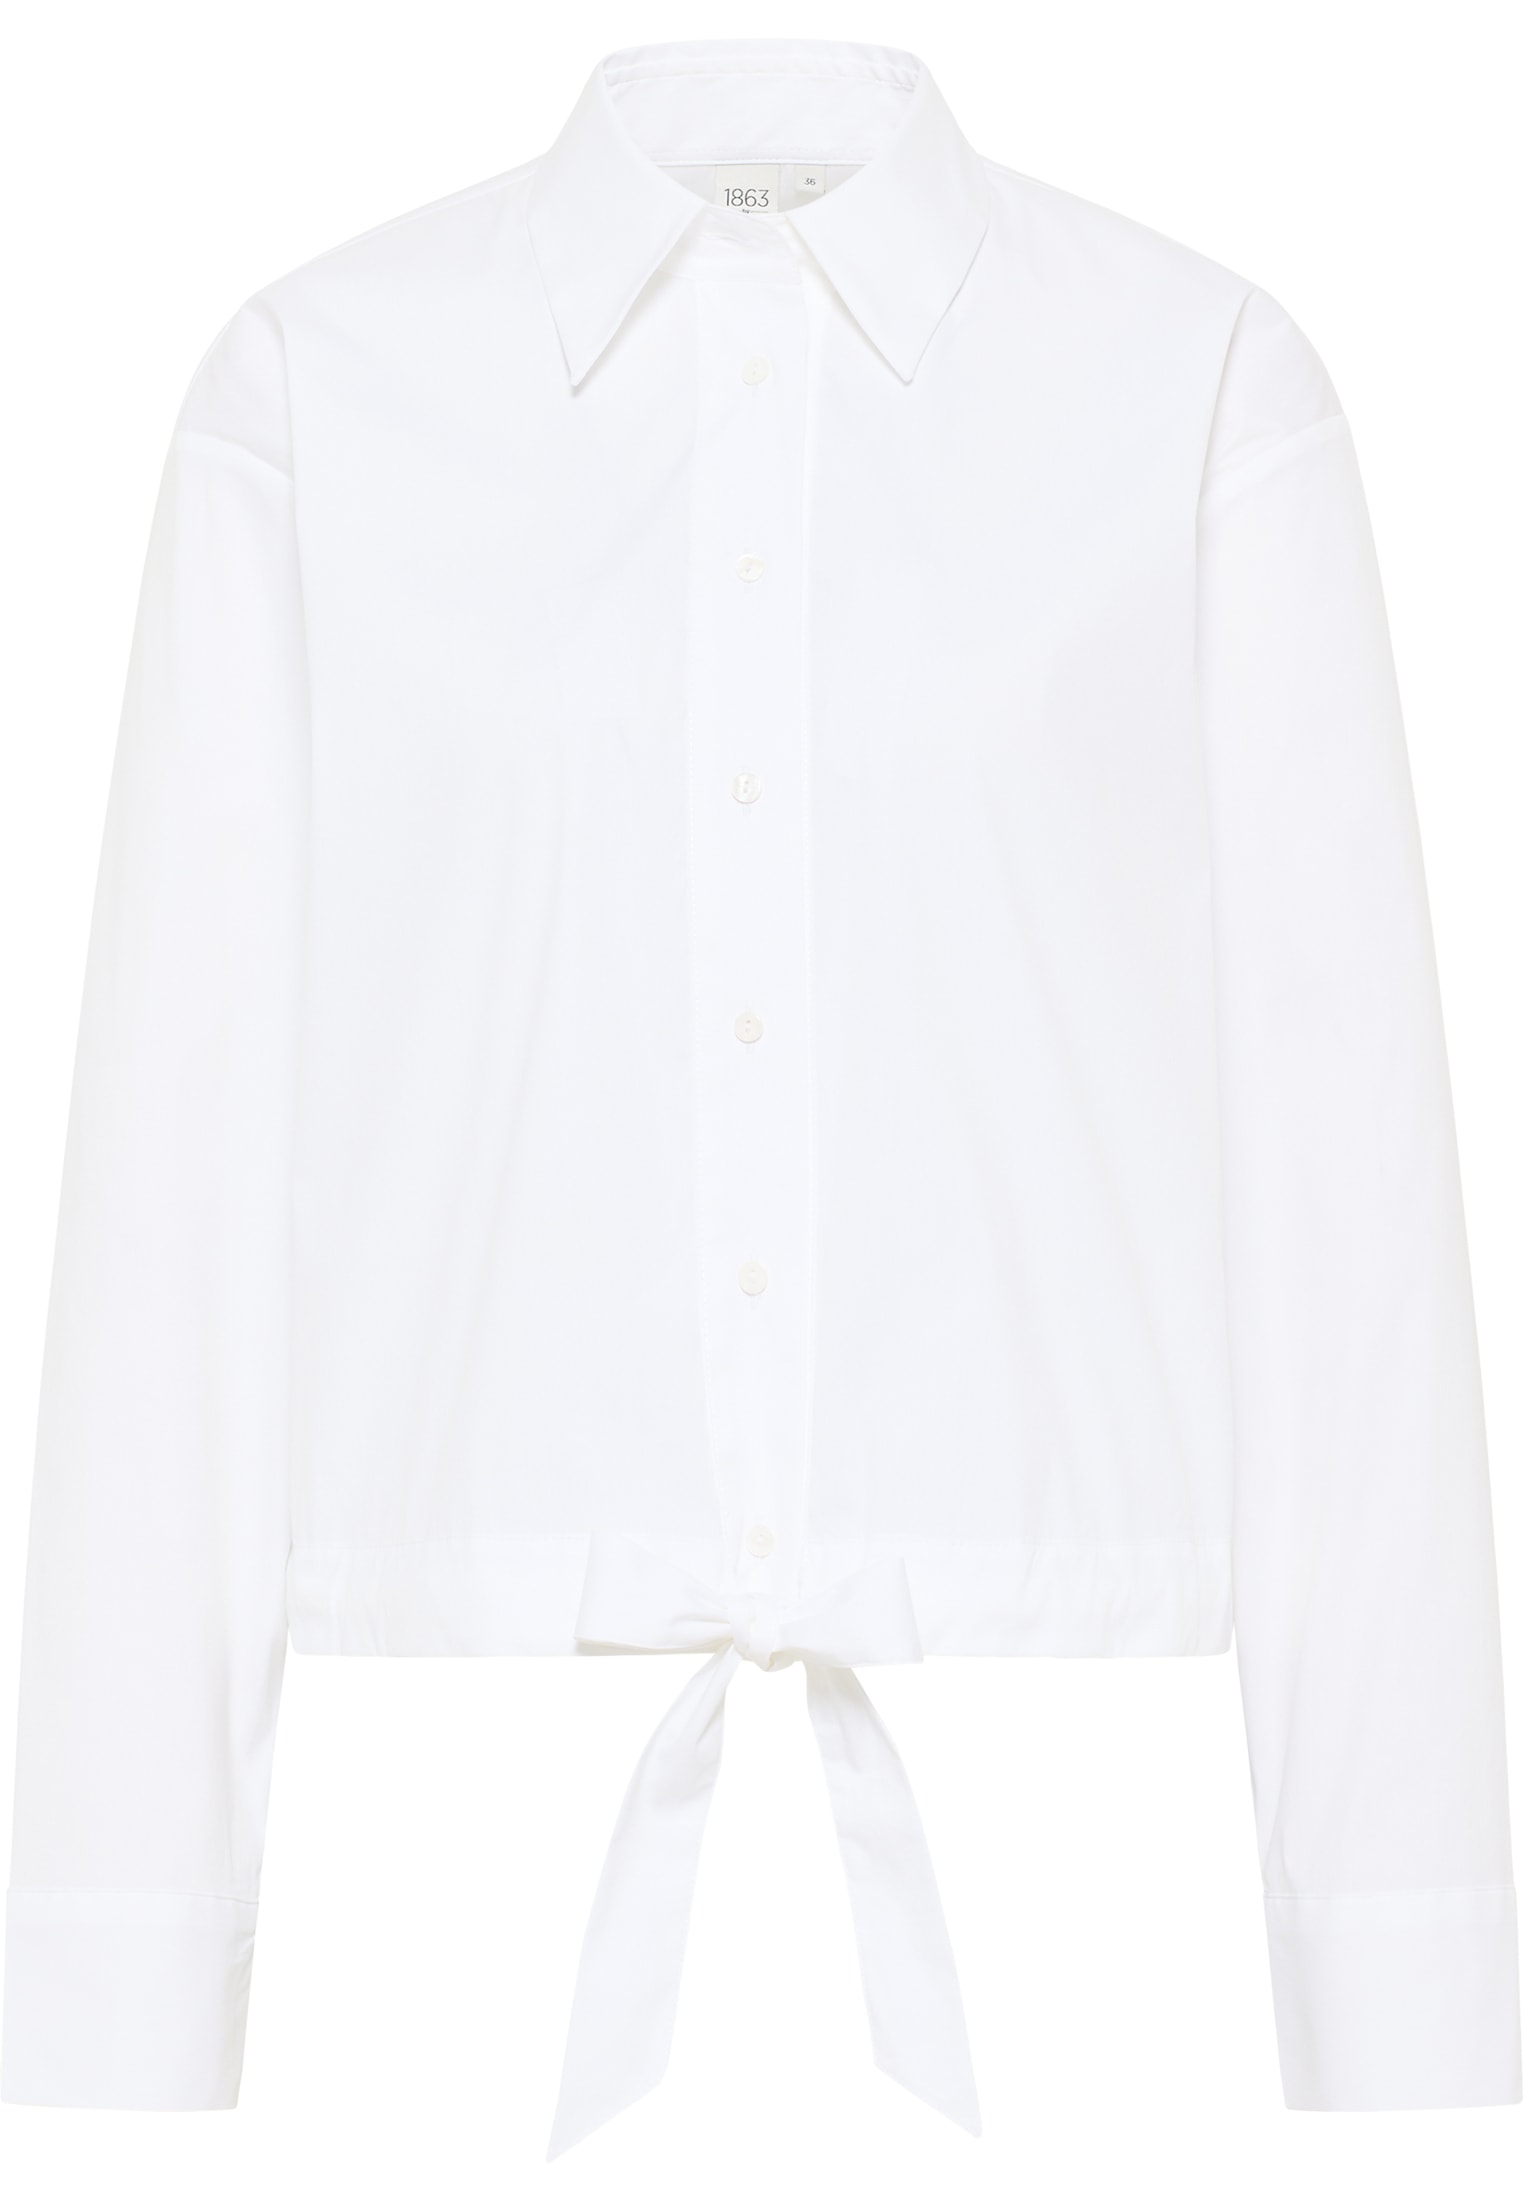 Signature Shirt unifarben 34 | weiß | | | Bluse in weiß 2BL04027-00-01-34-1/1 Langarm